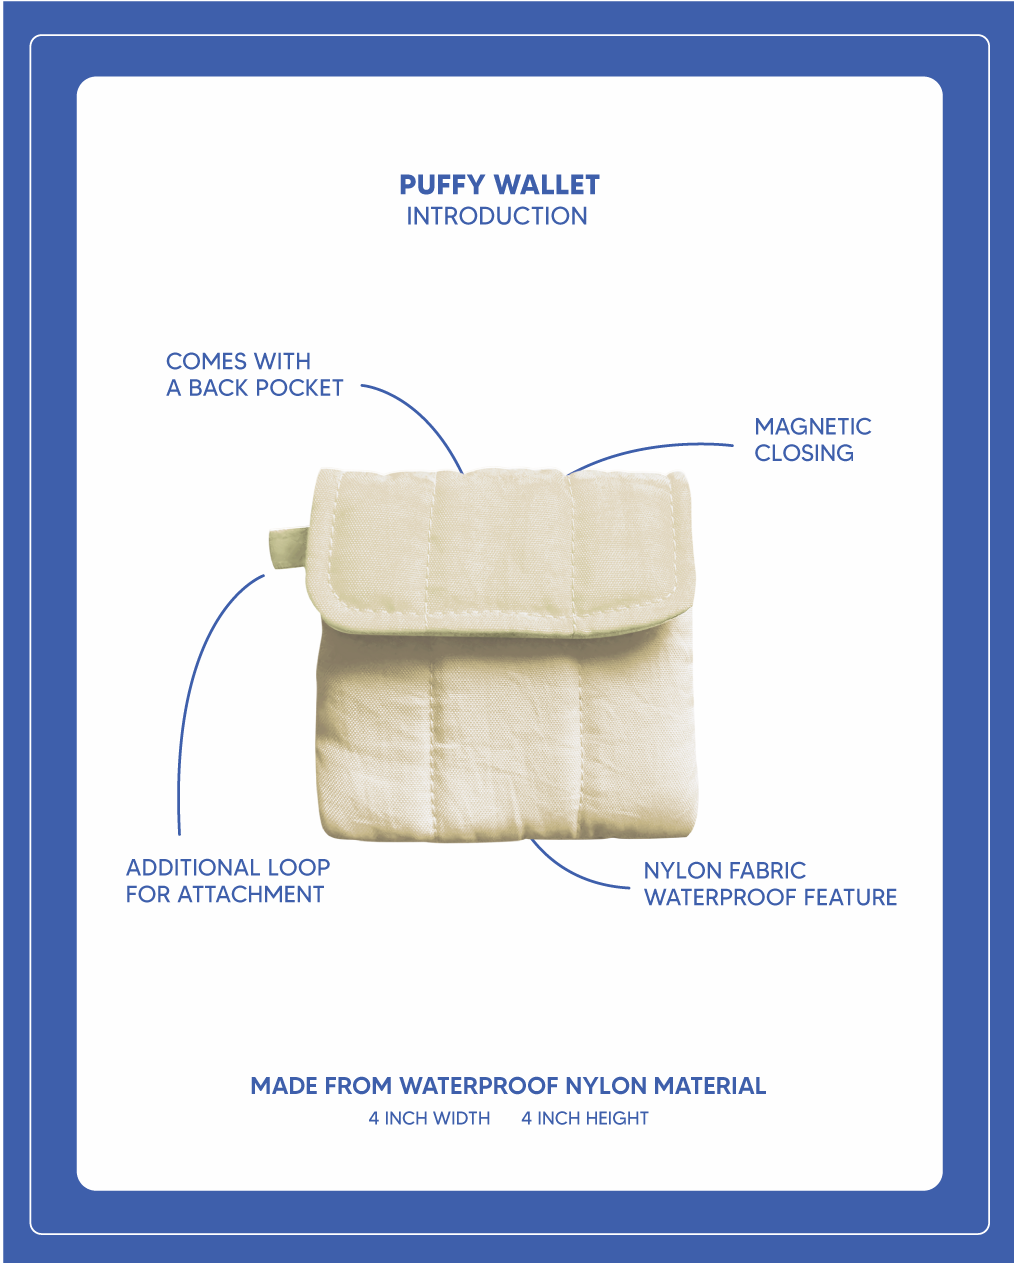 Puffy Wallet - Cream White